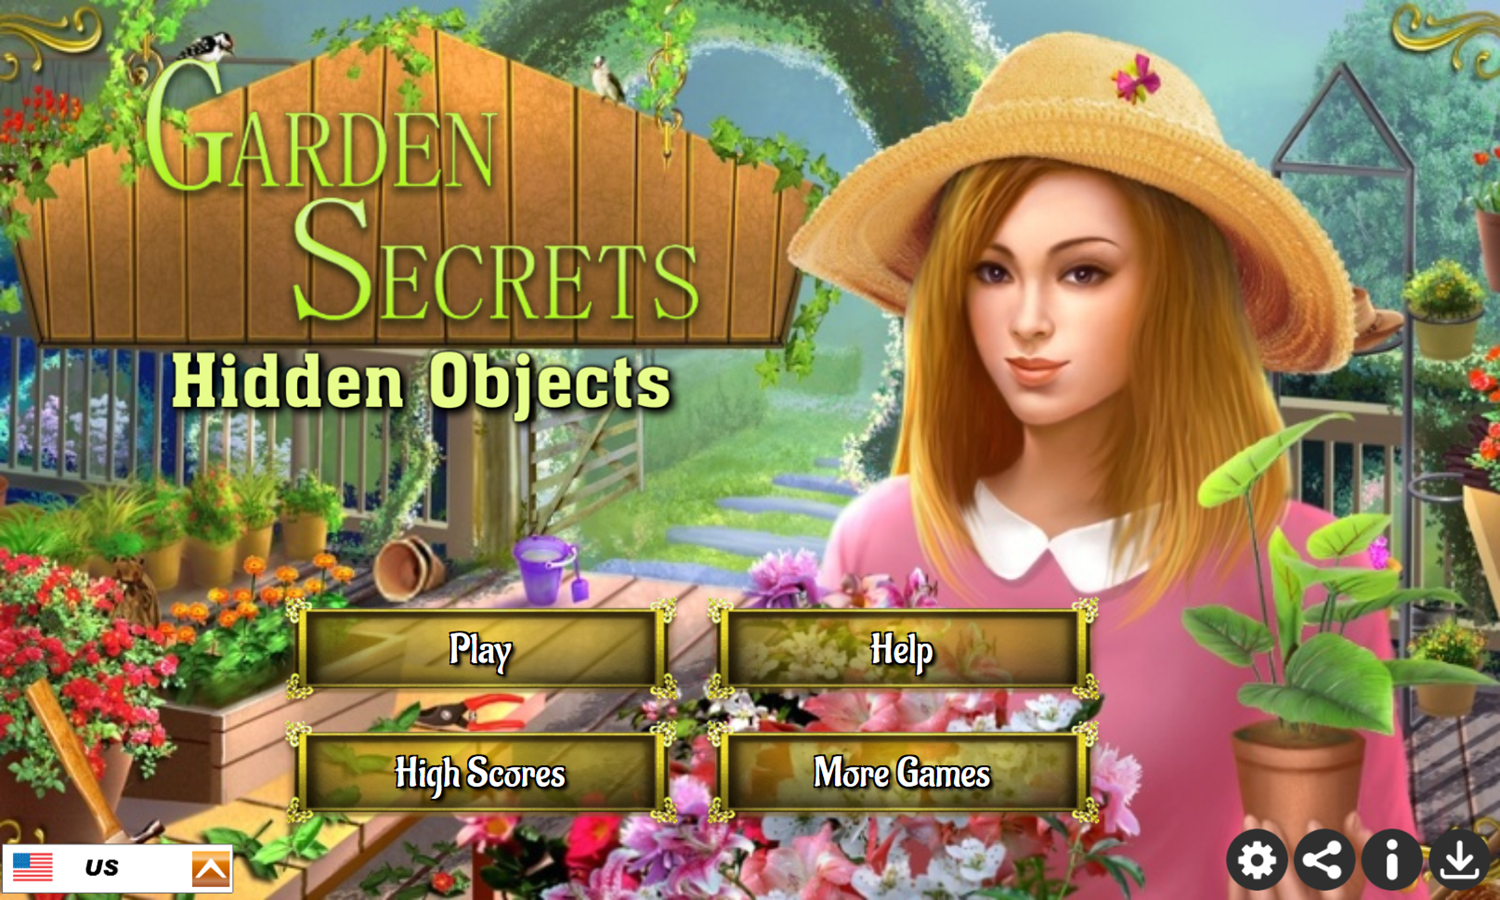 Garden Secrets Hidden Objects Game Welcome Screen Screenshot.